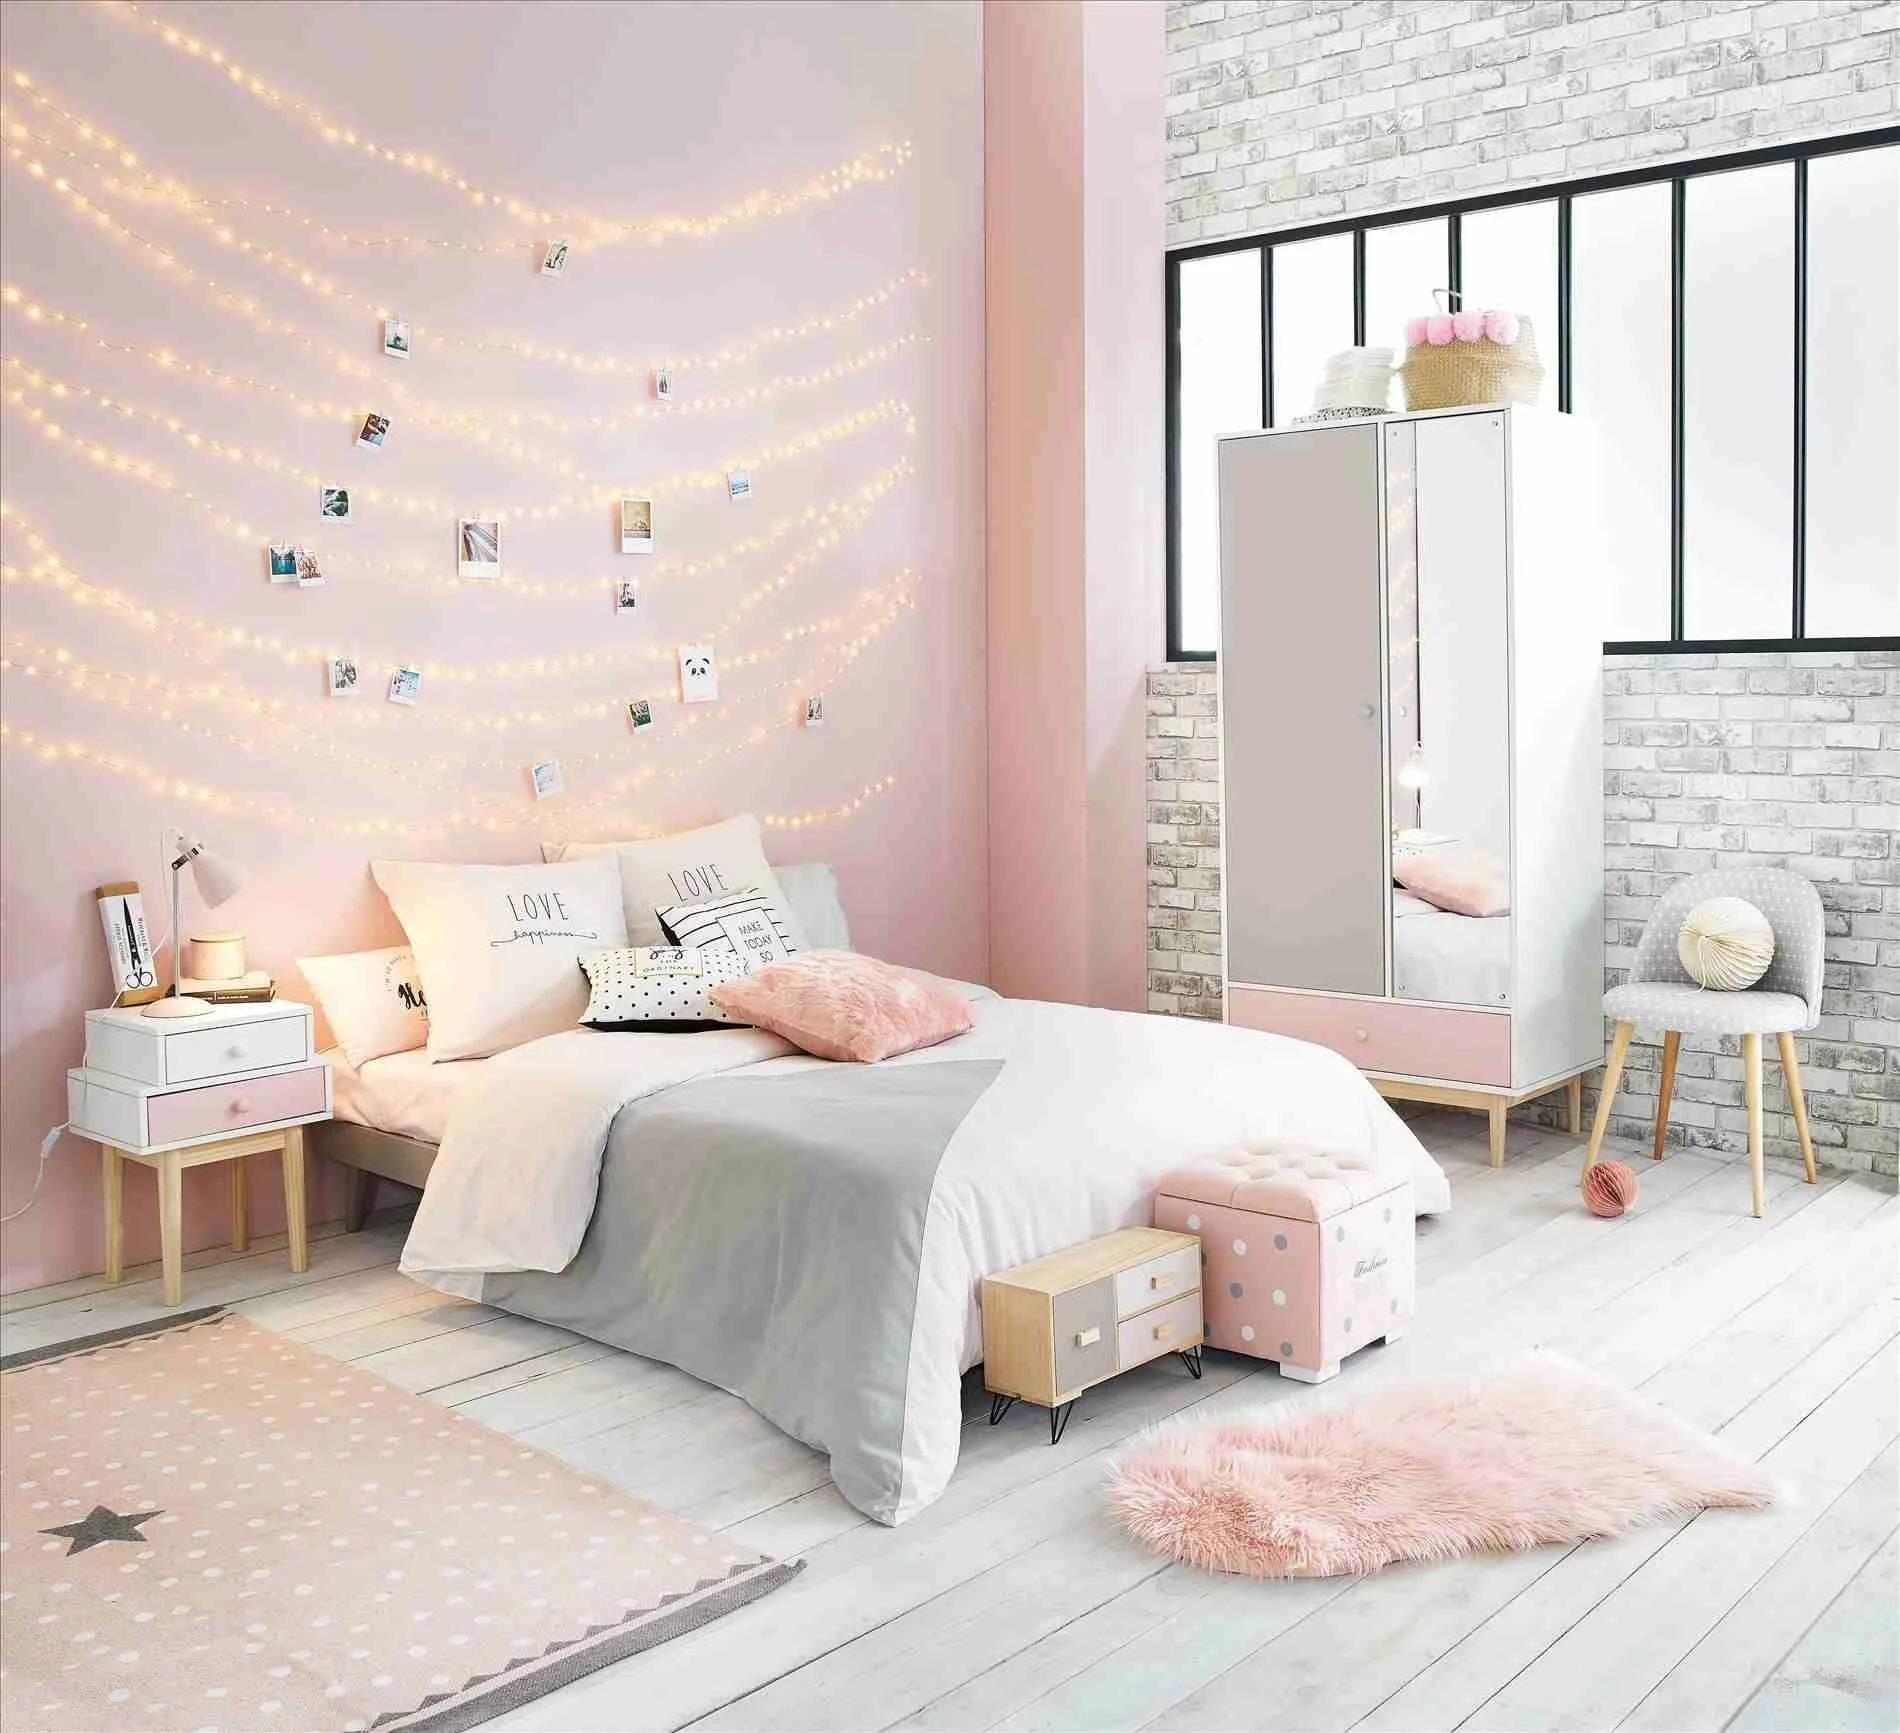 Thảm trải sàn giúp phòng ngủ màu trắng hồng ấm cúng hơn